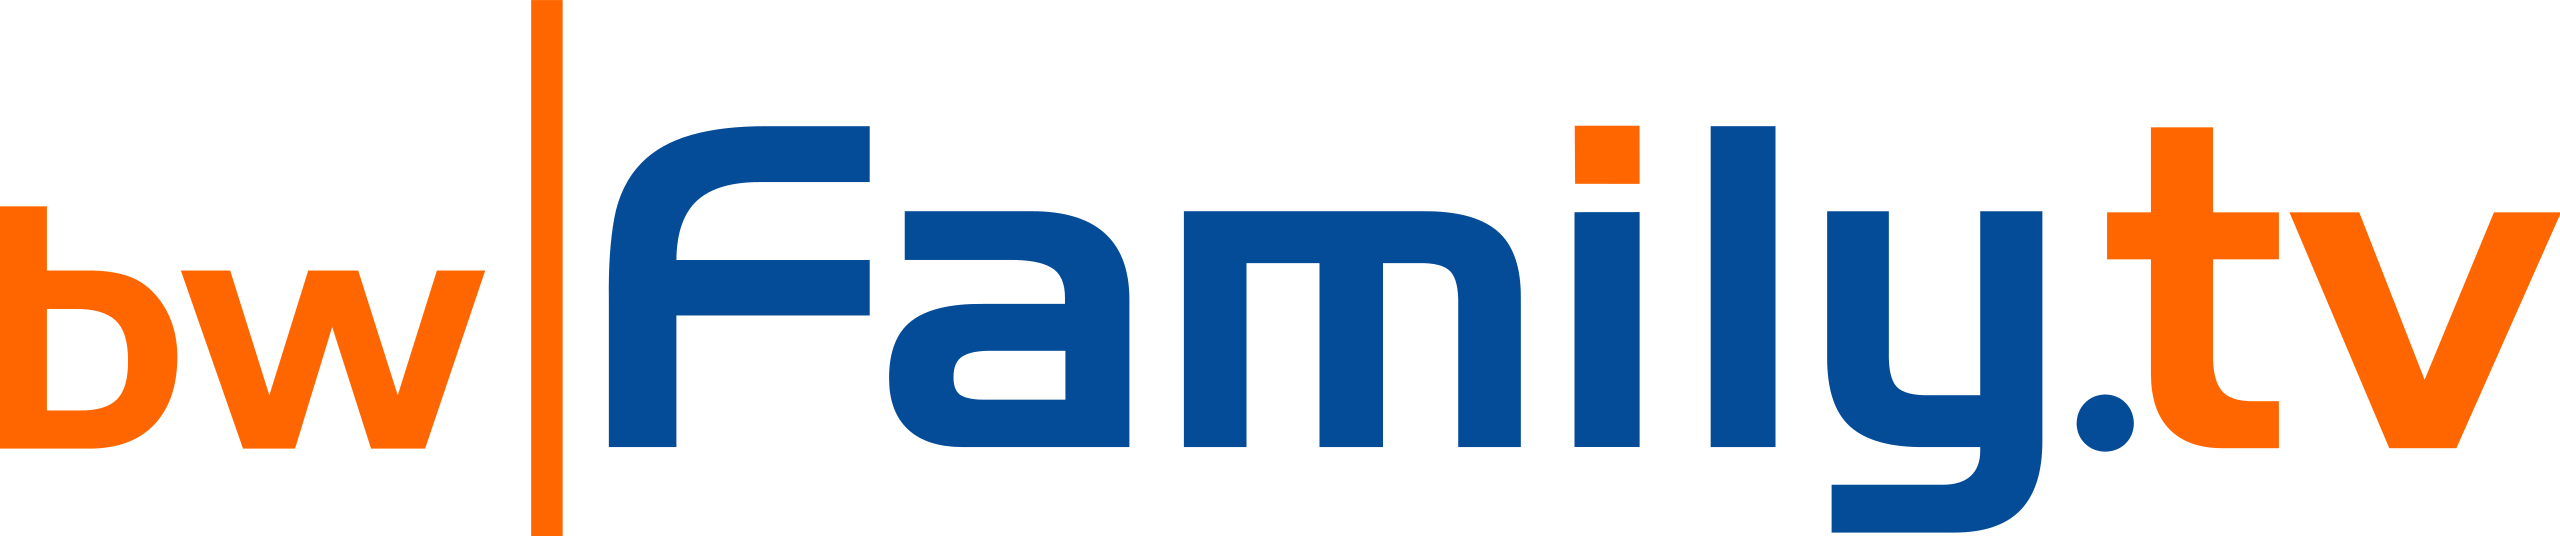 BwFamily logo